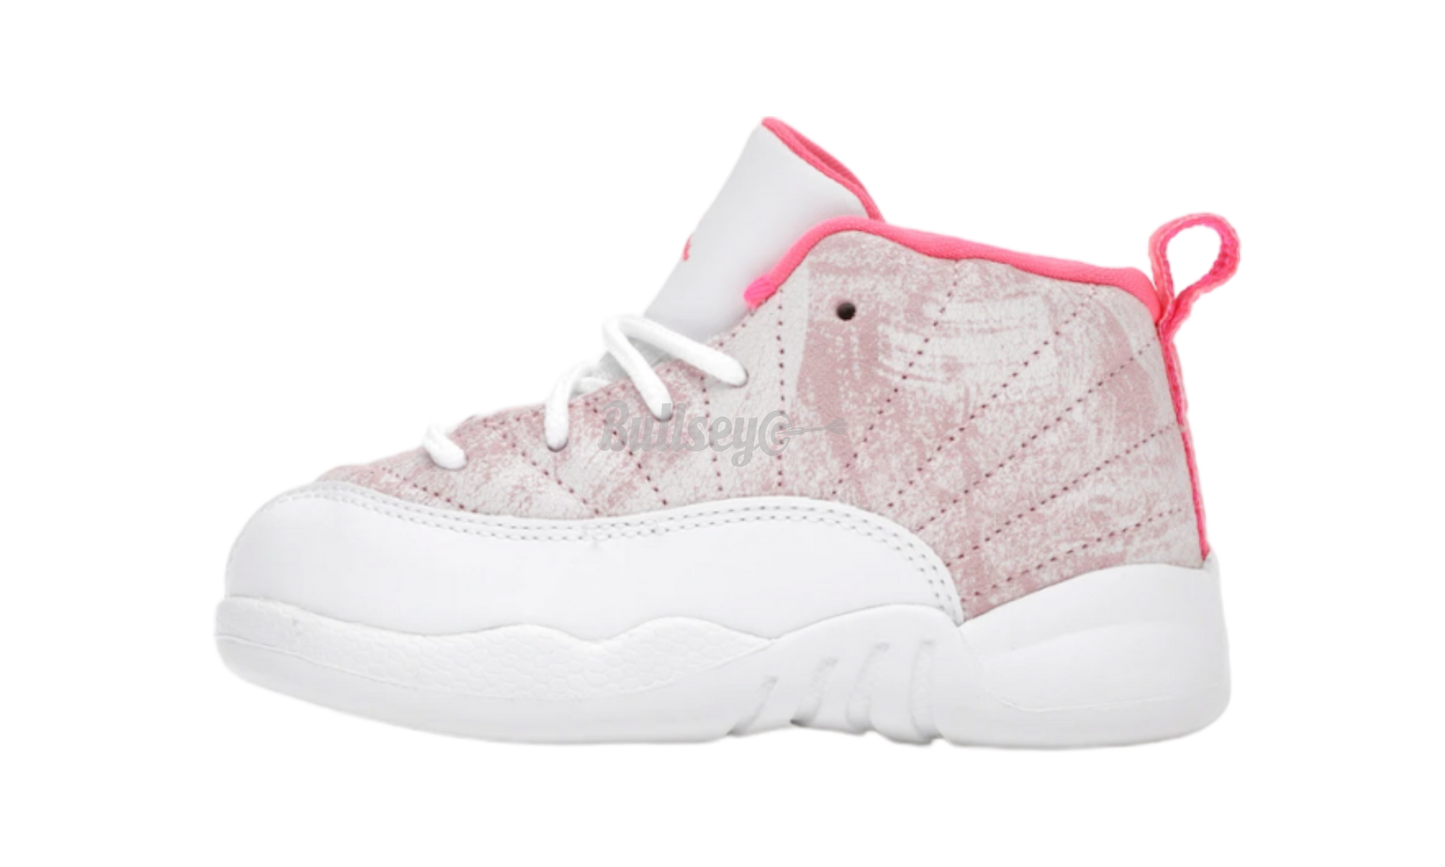 Air Jordan 12 Retro "Arctic Punch" Toddler-Bullseye Sneaker Boutique